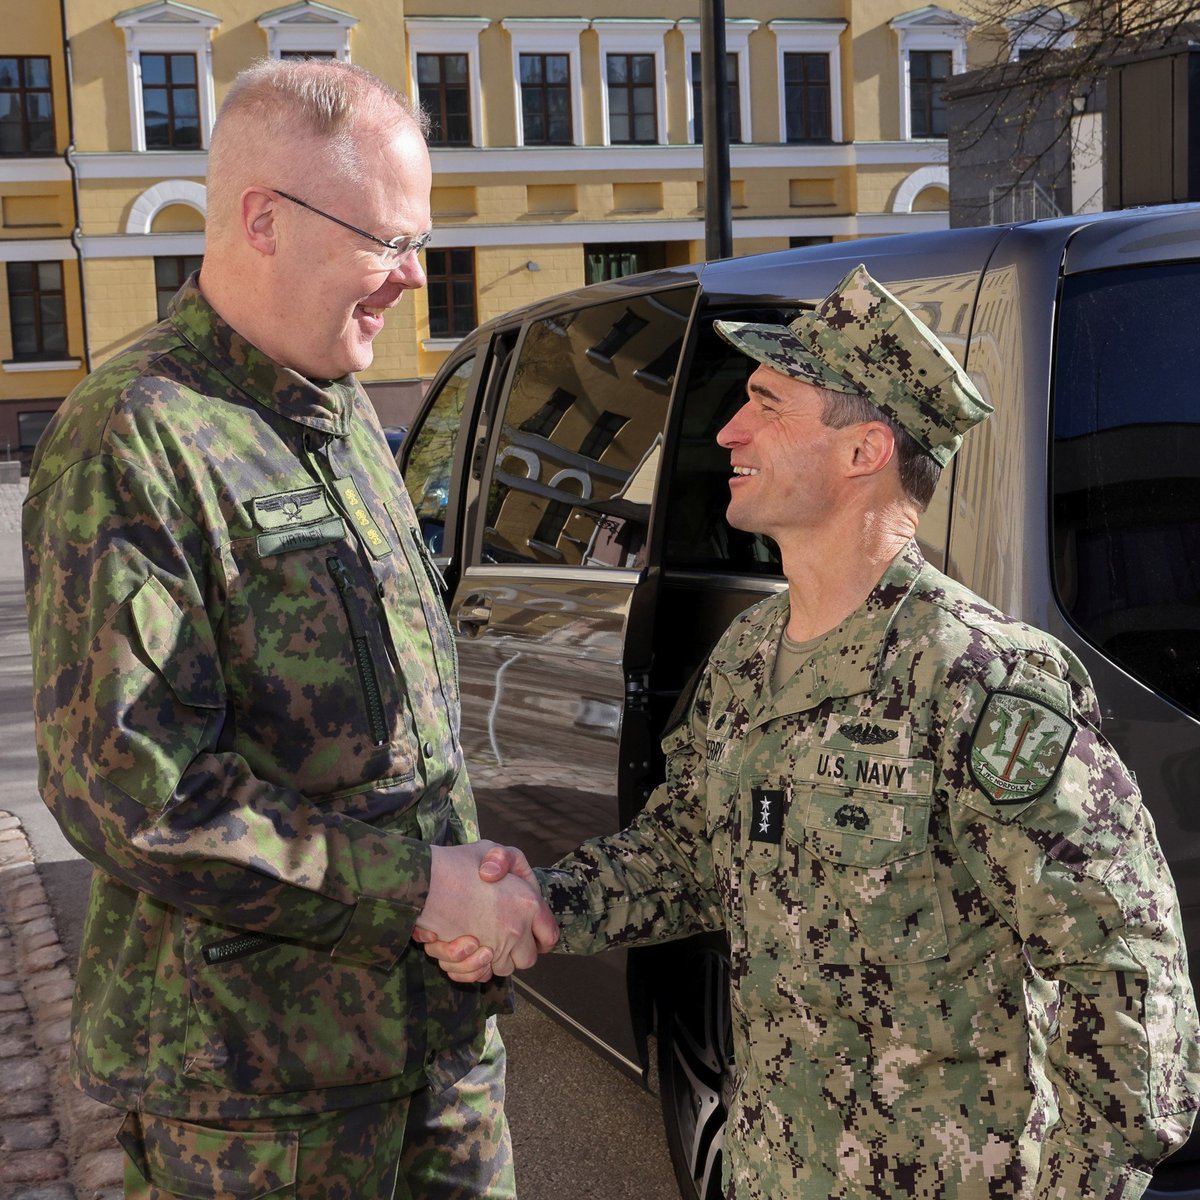 Vara-amiraali Doug Perryn vierailun aikana keskusteltiin liittokunnan yhteisestä operatiivisesta suunnittelusta. ”Keskustelun kautta muodostamme yhteisen näkemyksen Naton pohjoisten alueiden yhteisestä puolustuksesta”, toteaa kenraaliluutnantti Virtanen. puolustusvoimat.fi/-/norfolkin-yh…